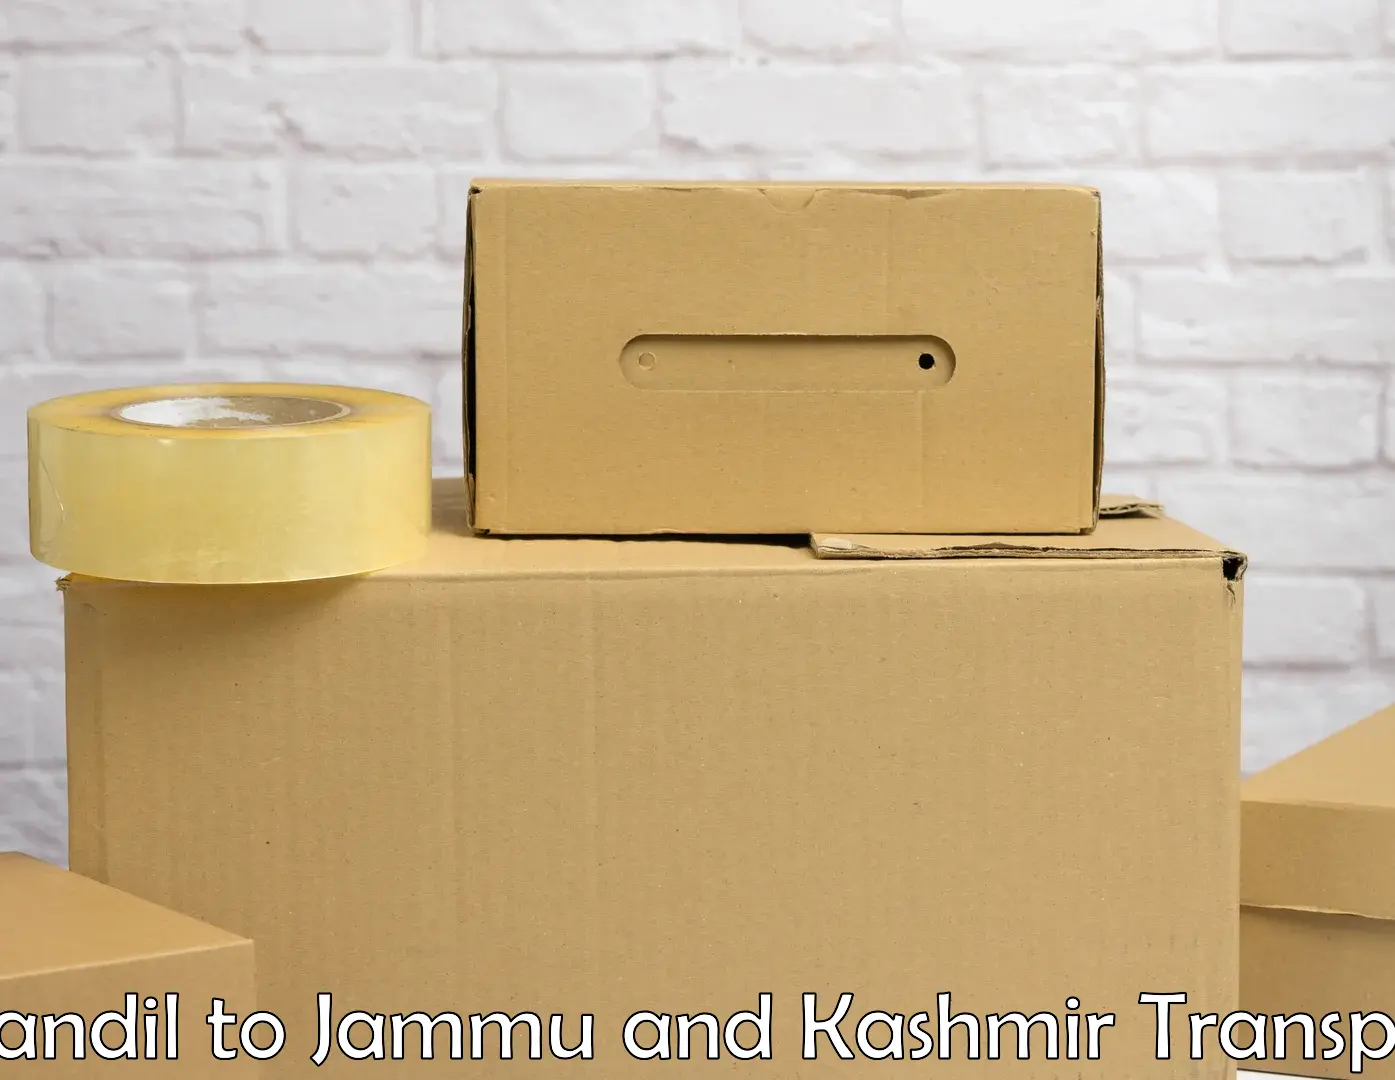 Online transport service Chandil to University of Jammu